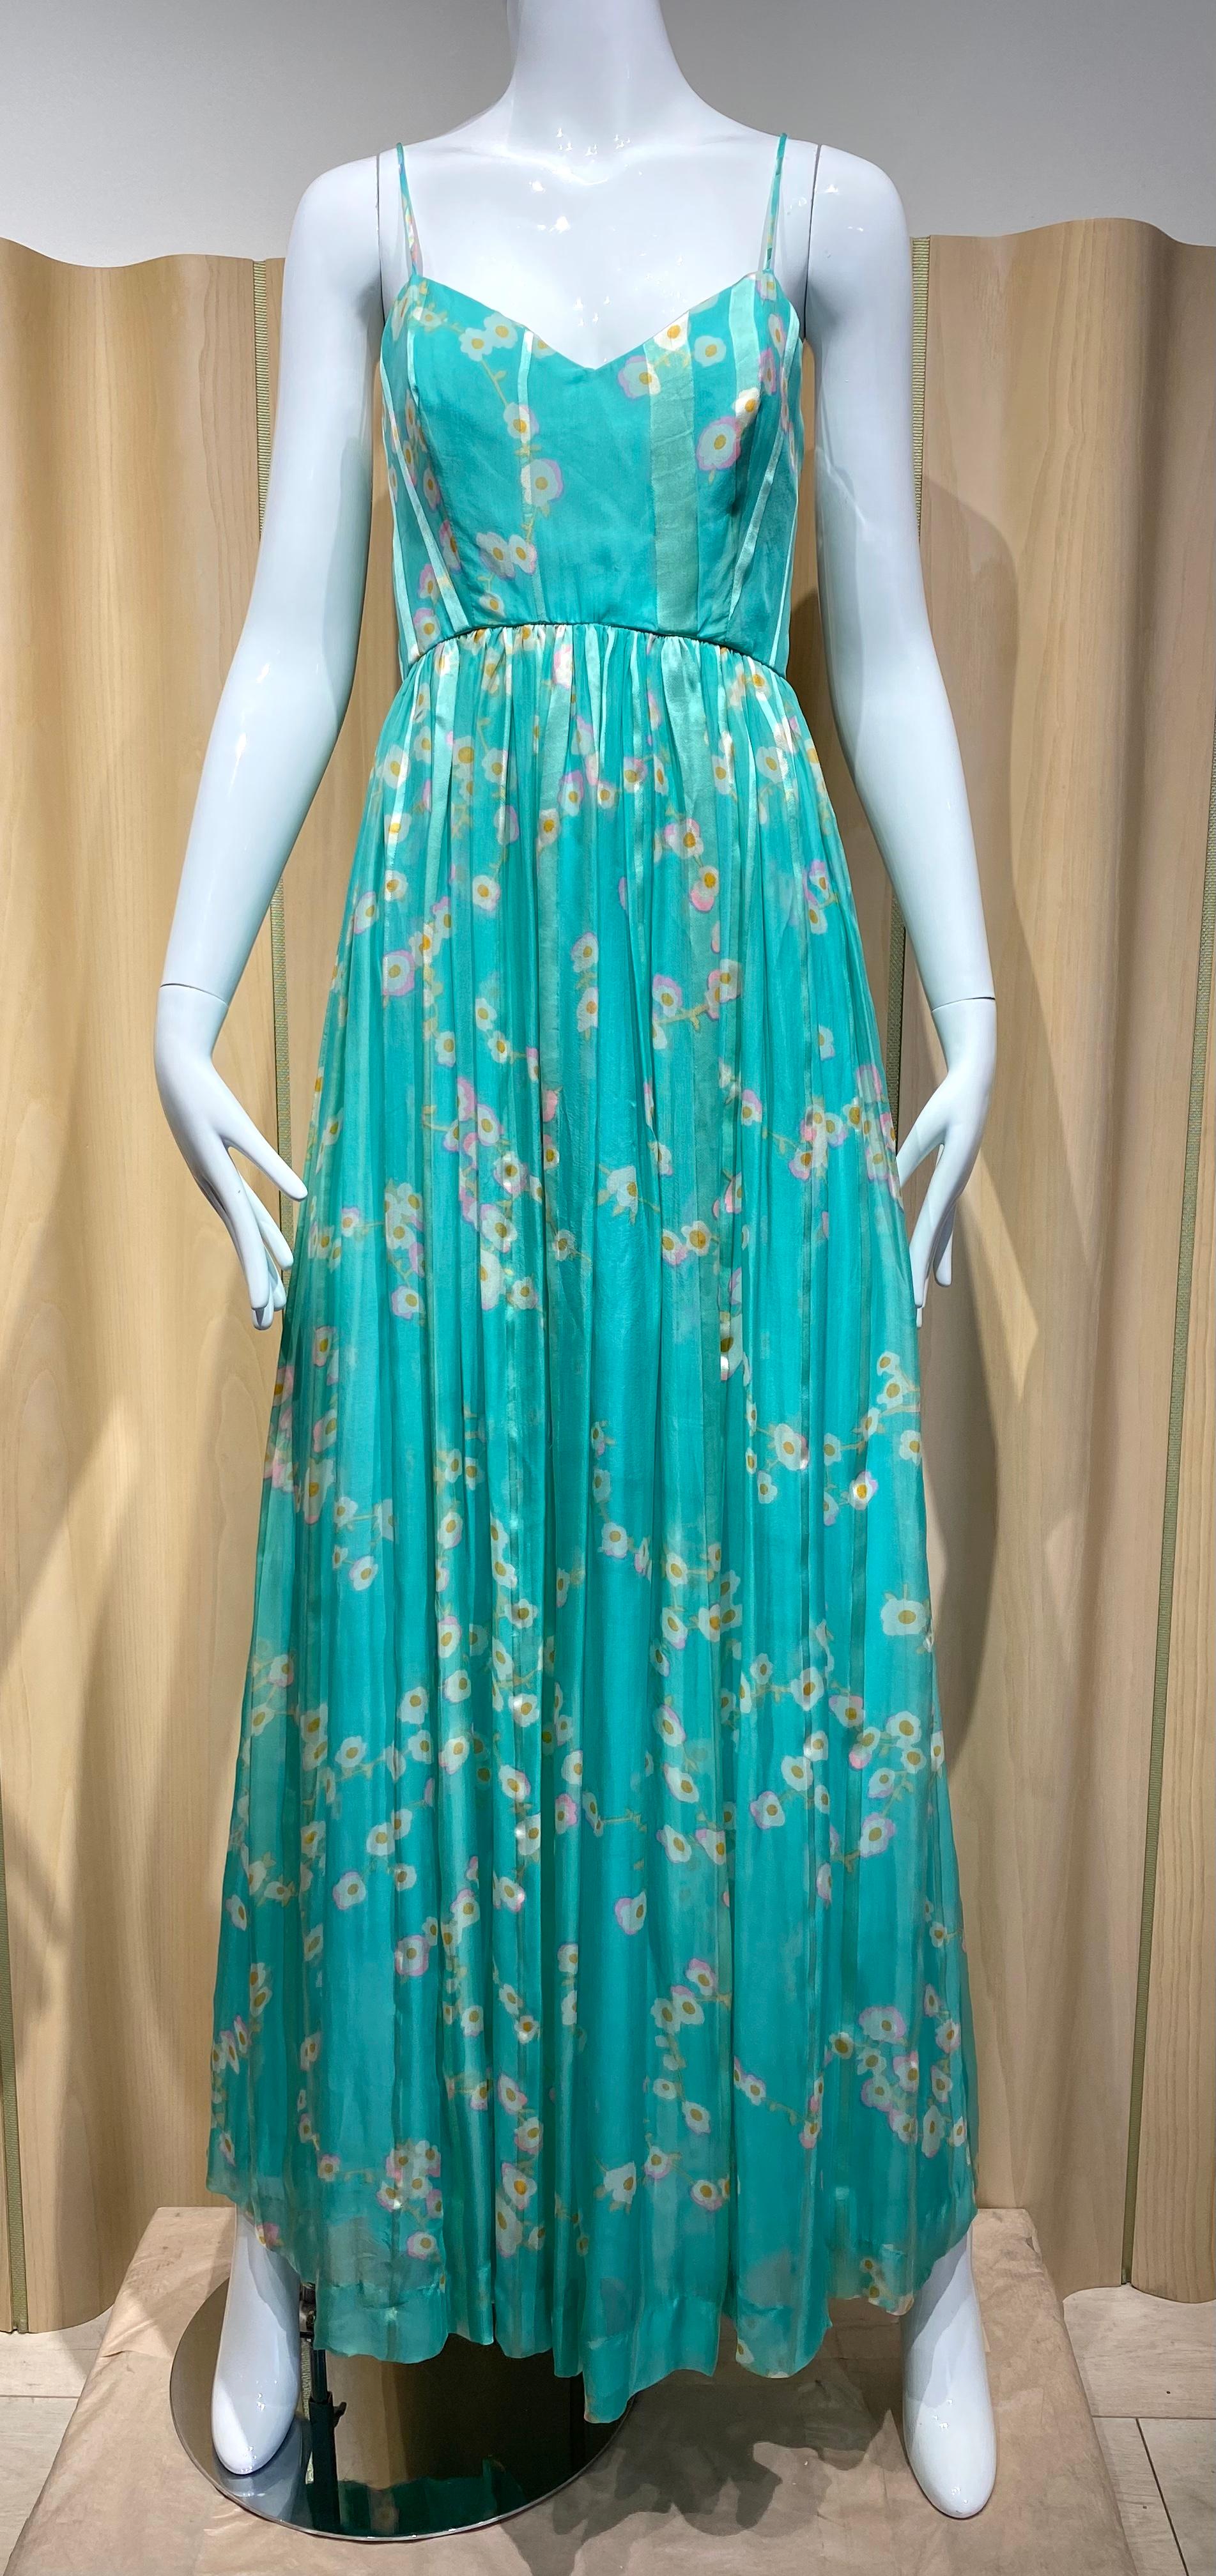 robe Geoffrey Beene des années 1960 en soie à imprimé floral vert turquoise avec bretelles spaghetti.
Taille : 4
Mesure :
Buste ; 34